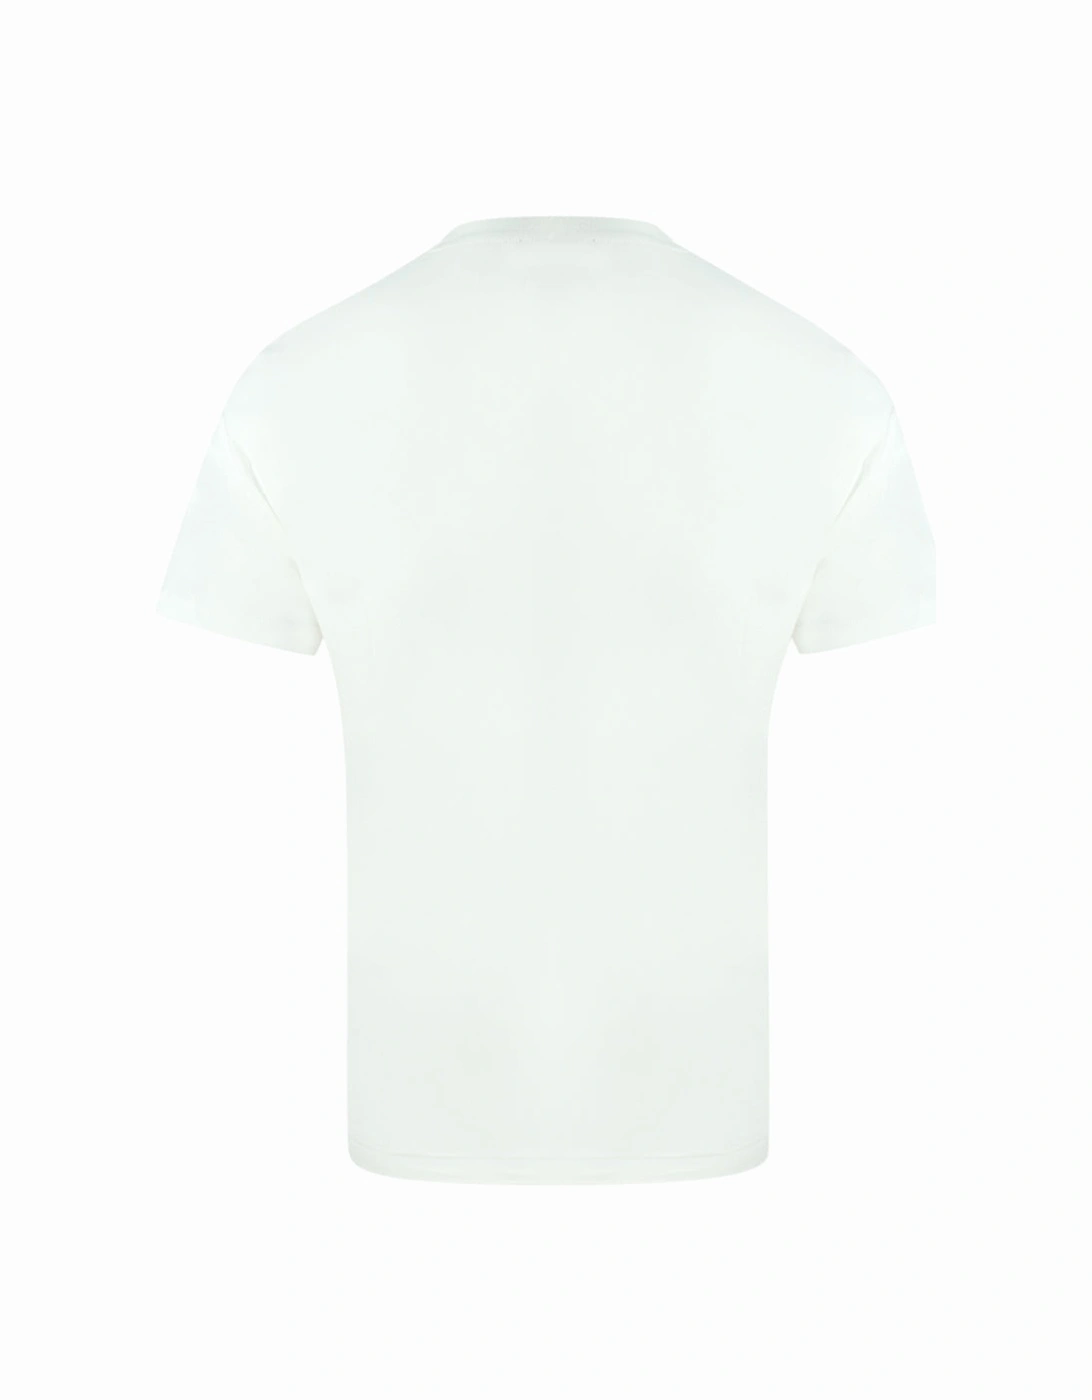 Leopard Logo White T-Shirt